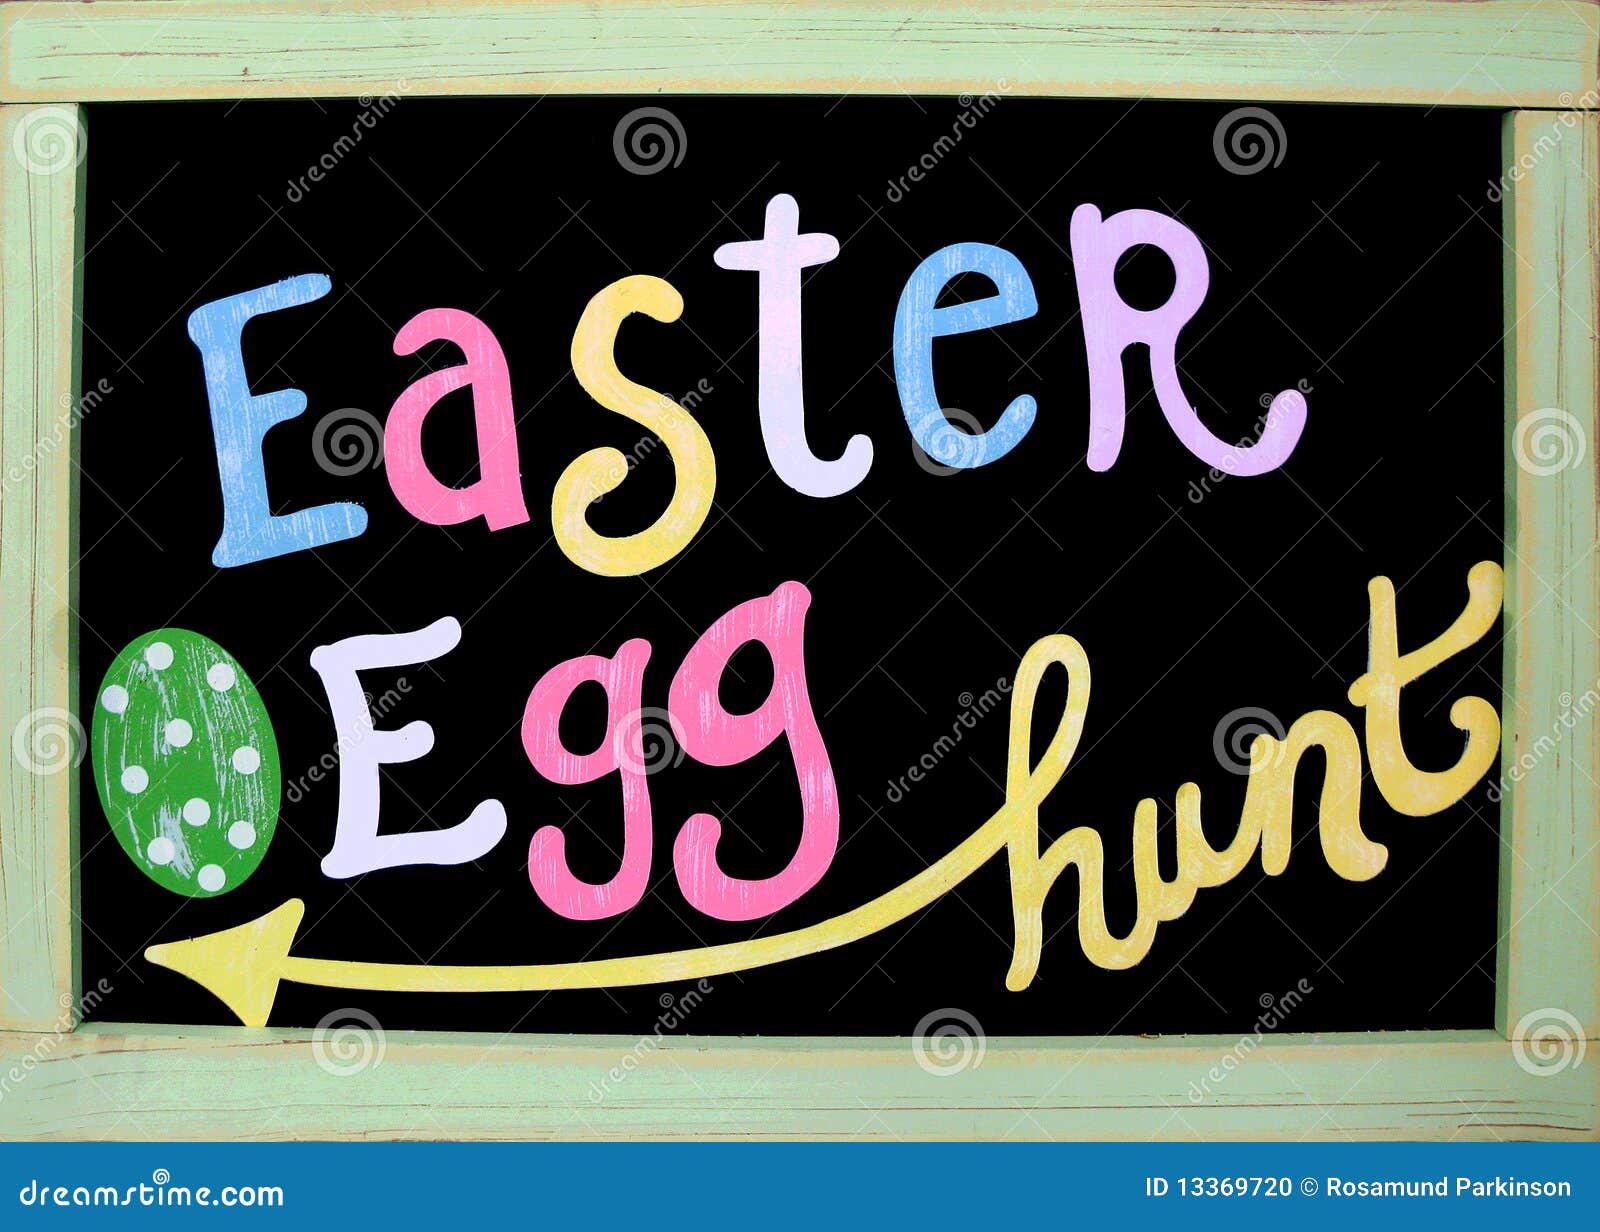 easter egg hunt sign